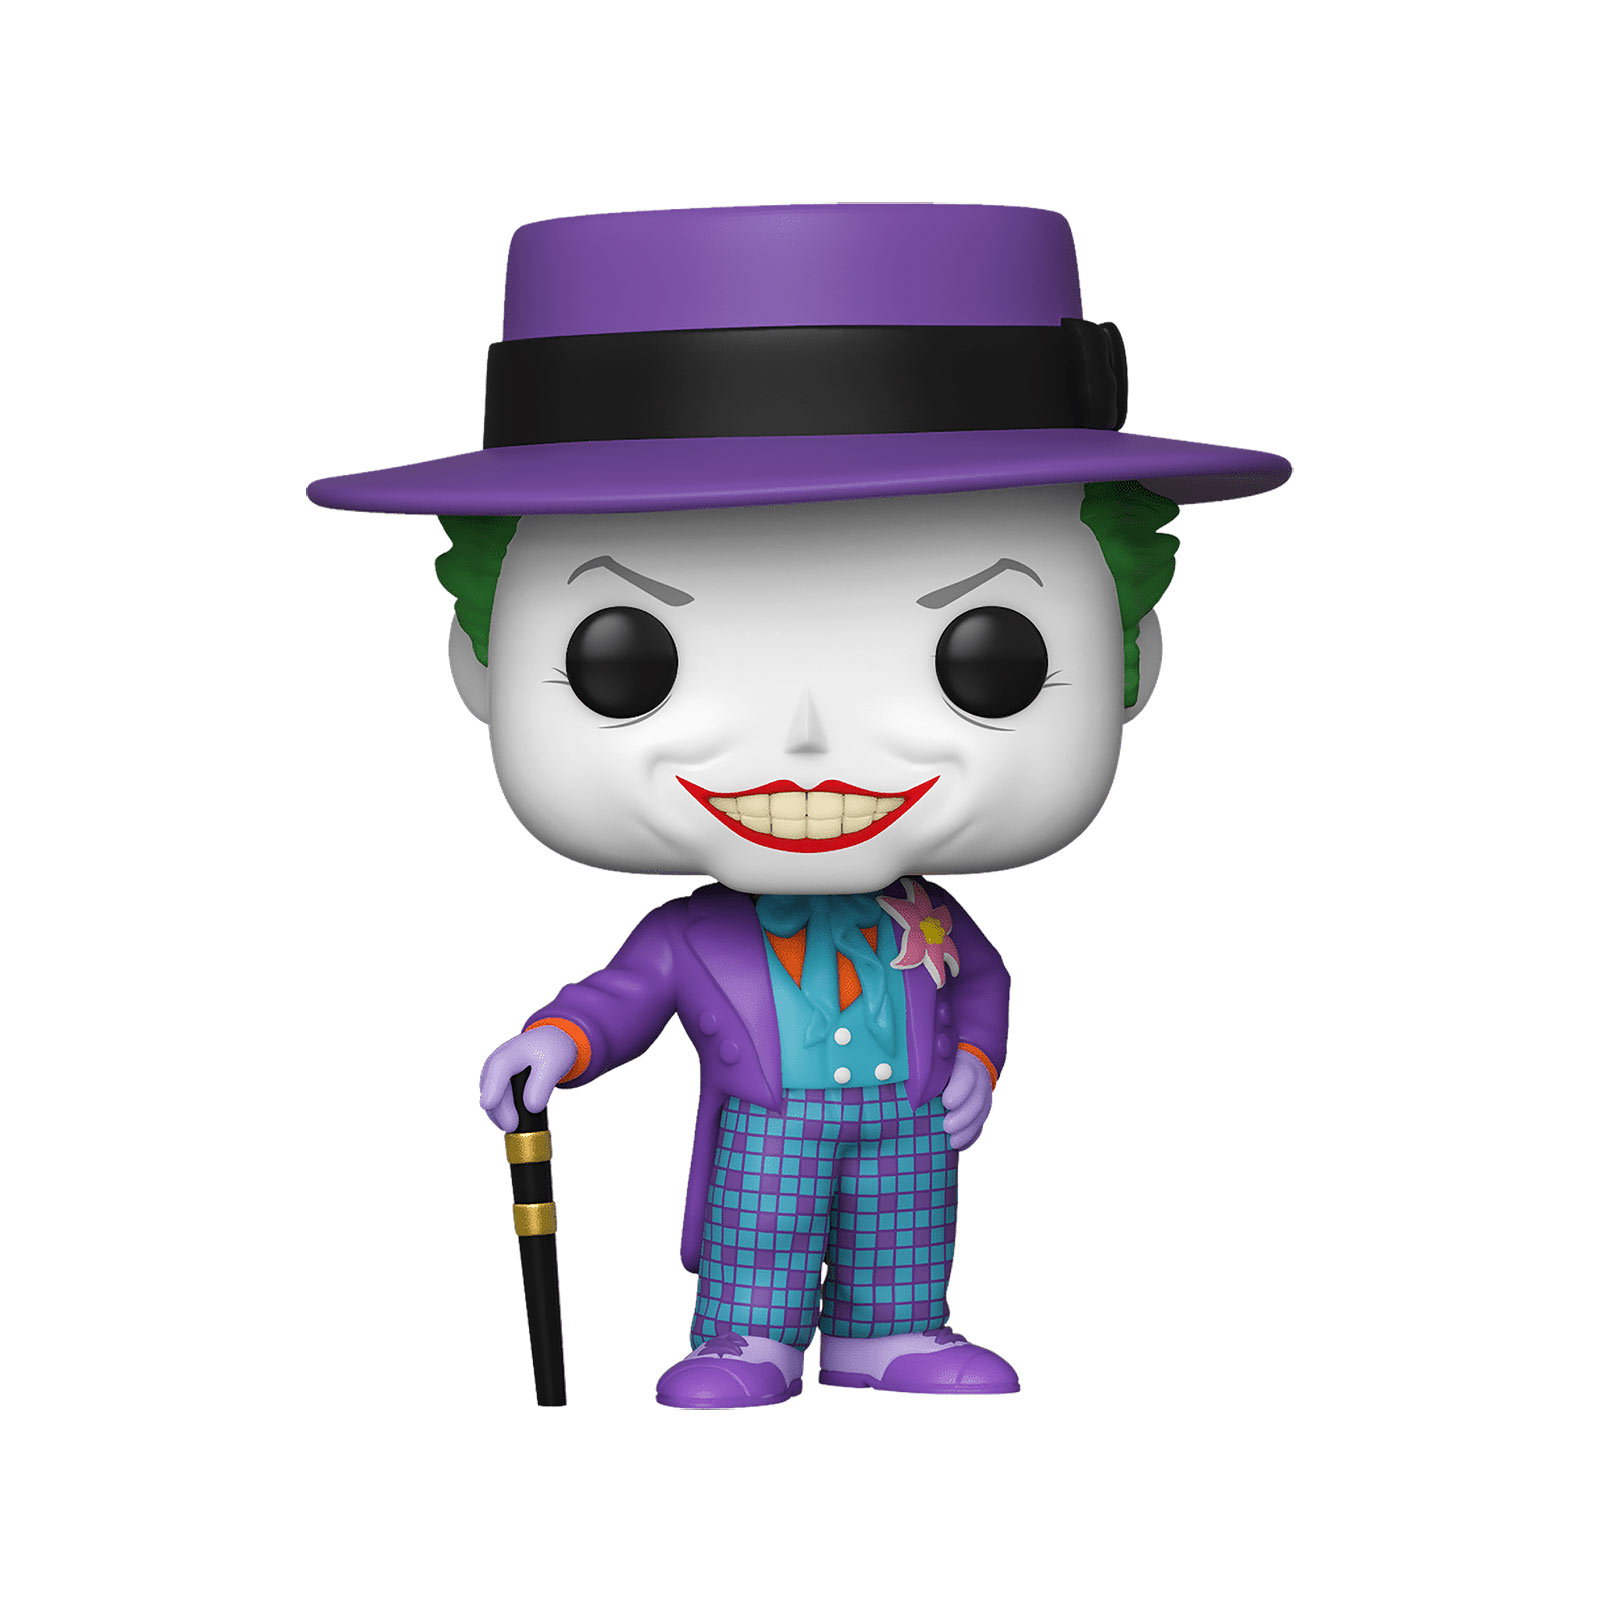 Batman - 1989 Joker mit Hut Funko Pop Figur